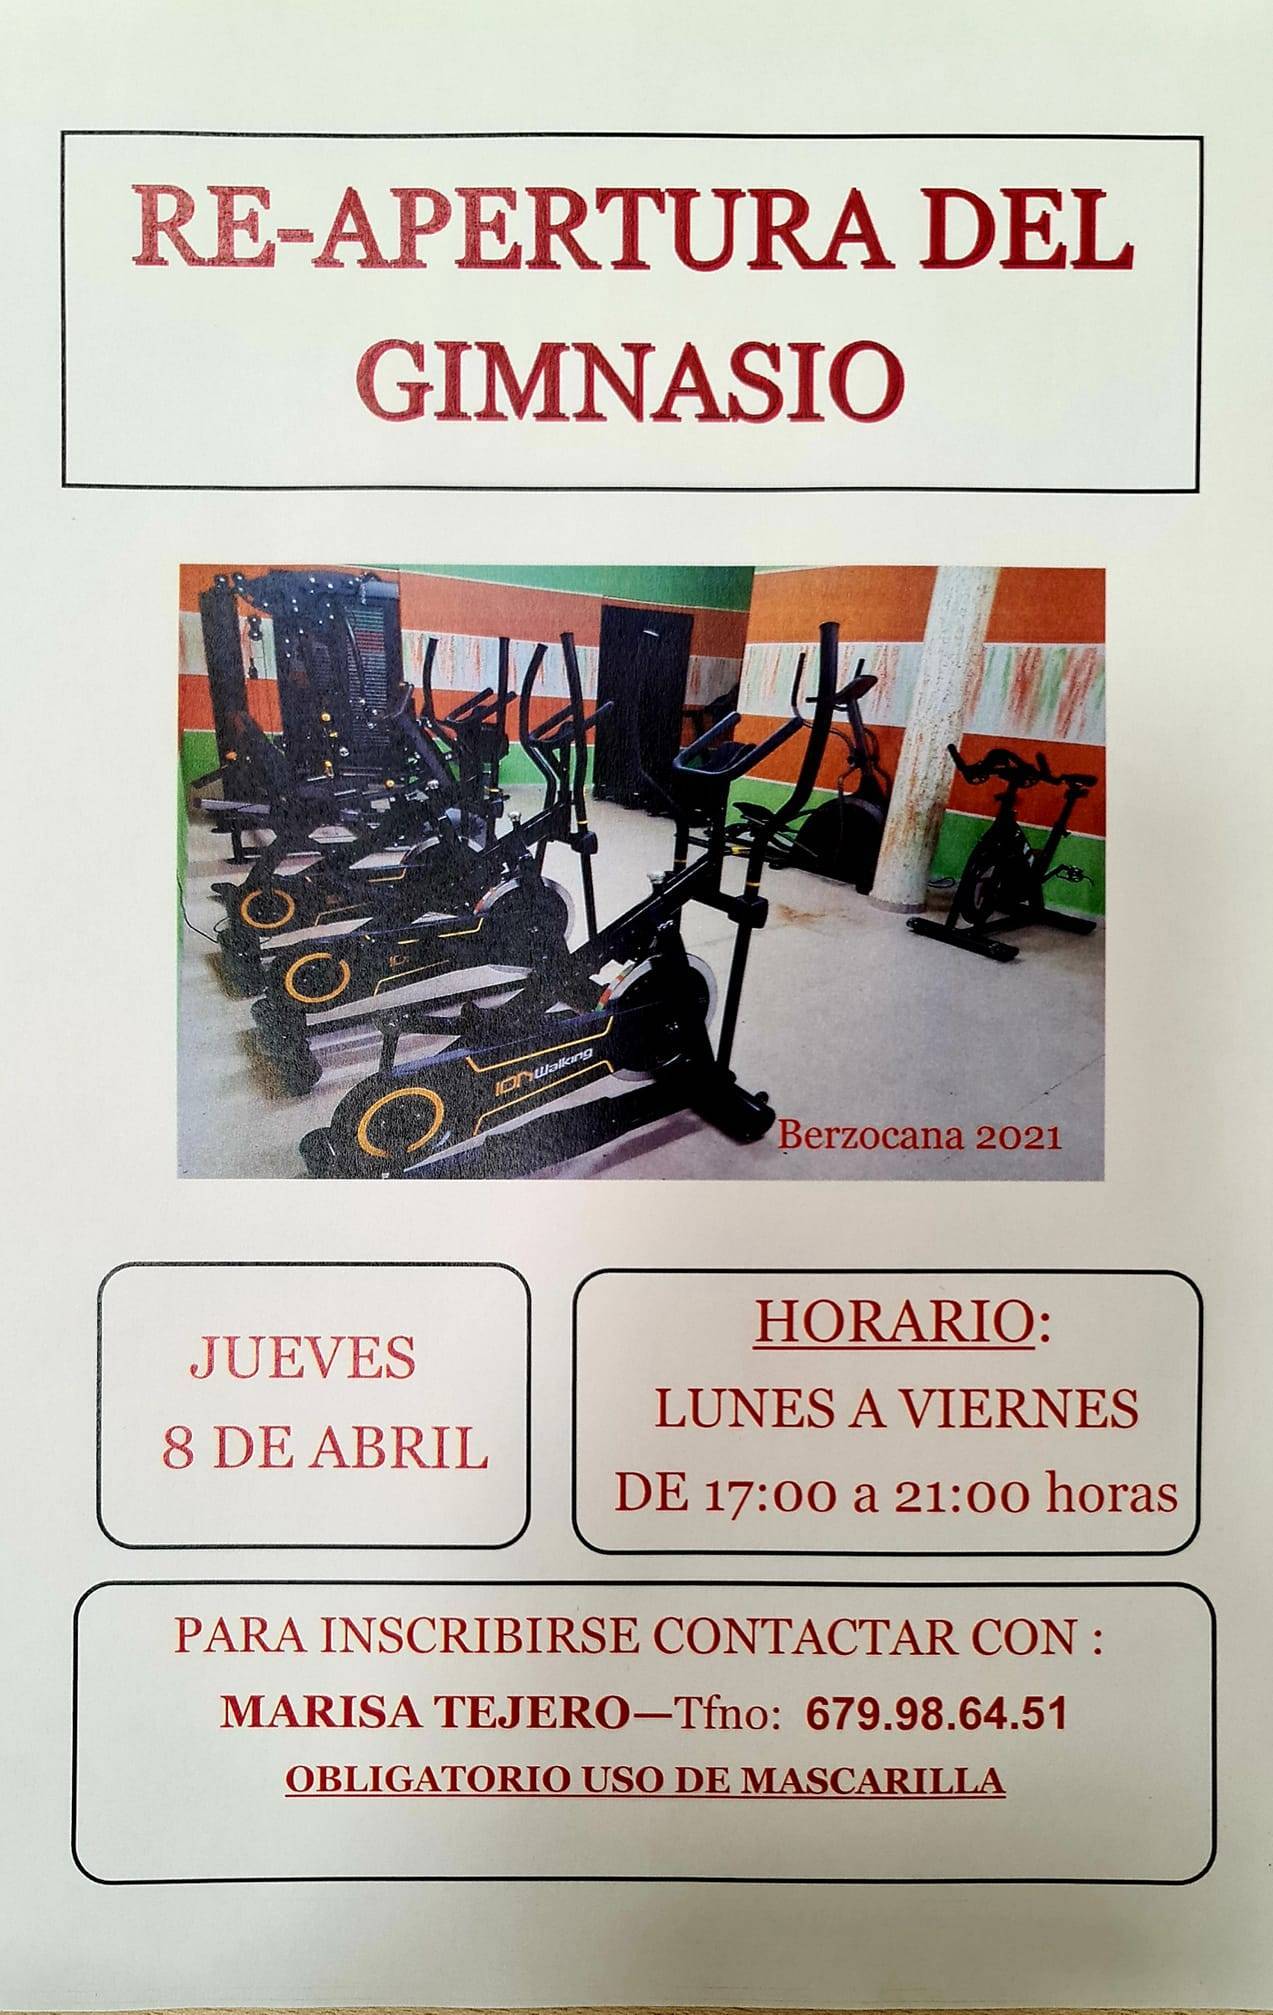 Reapertura del gimnasio (abril 2021) - Berzocana (Cáceres)